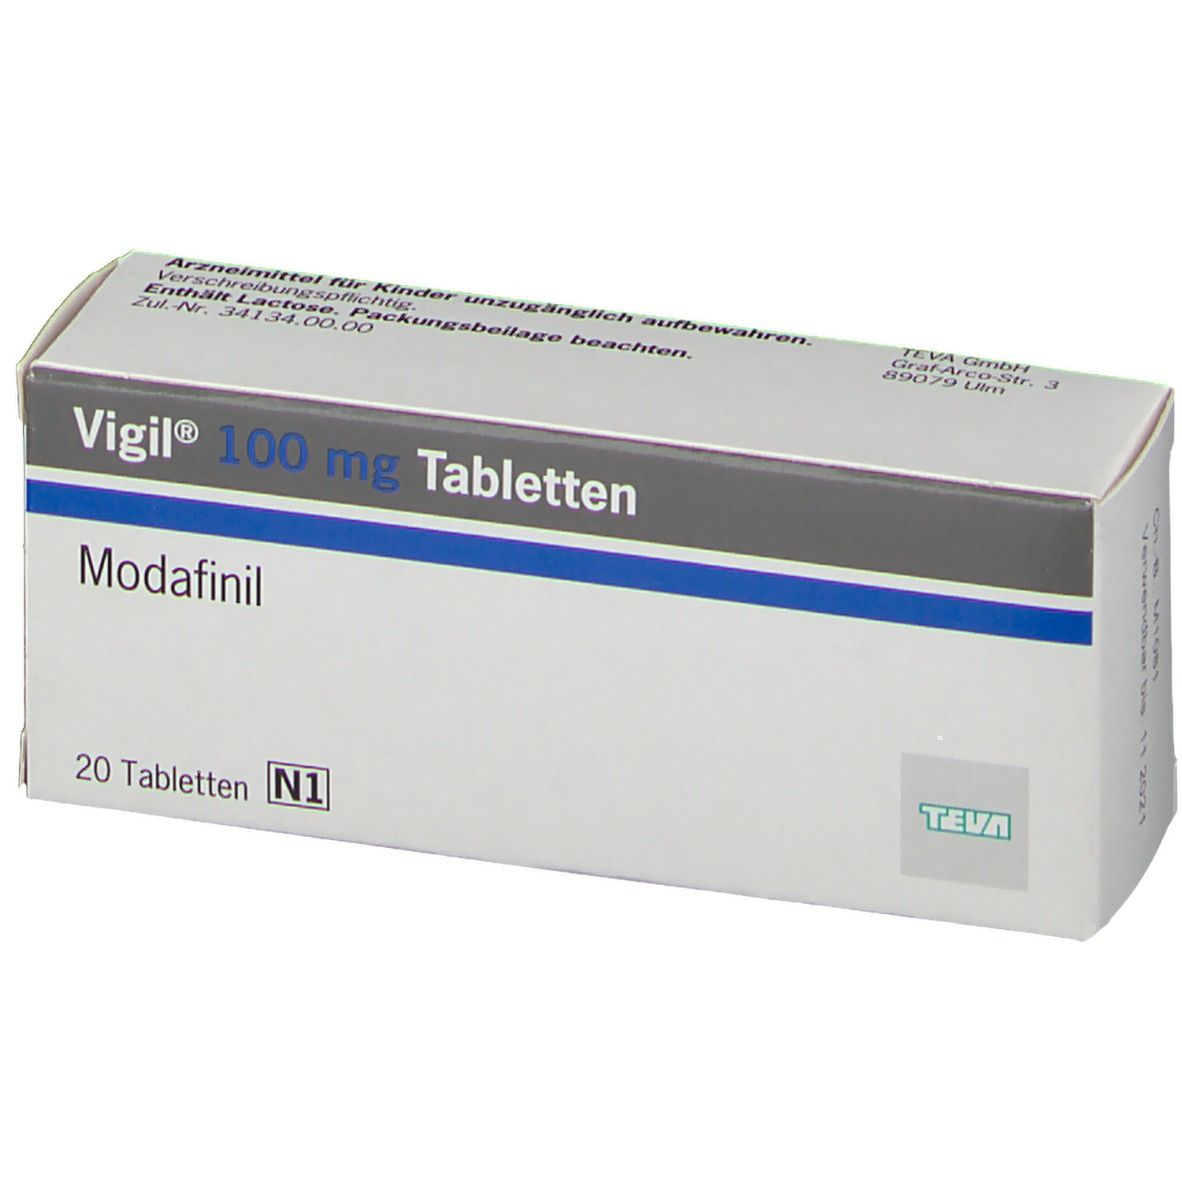 Vigil® 100 mg